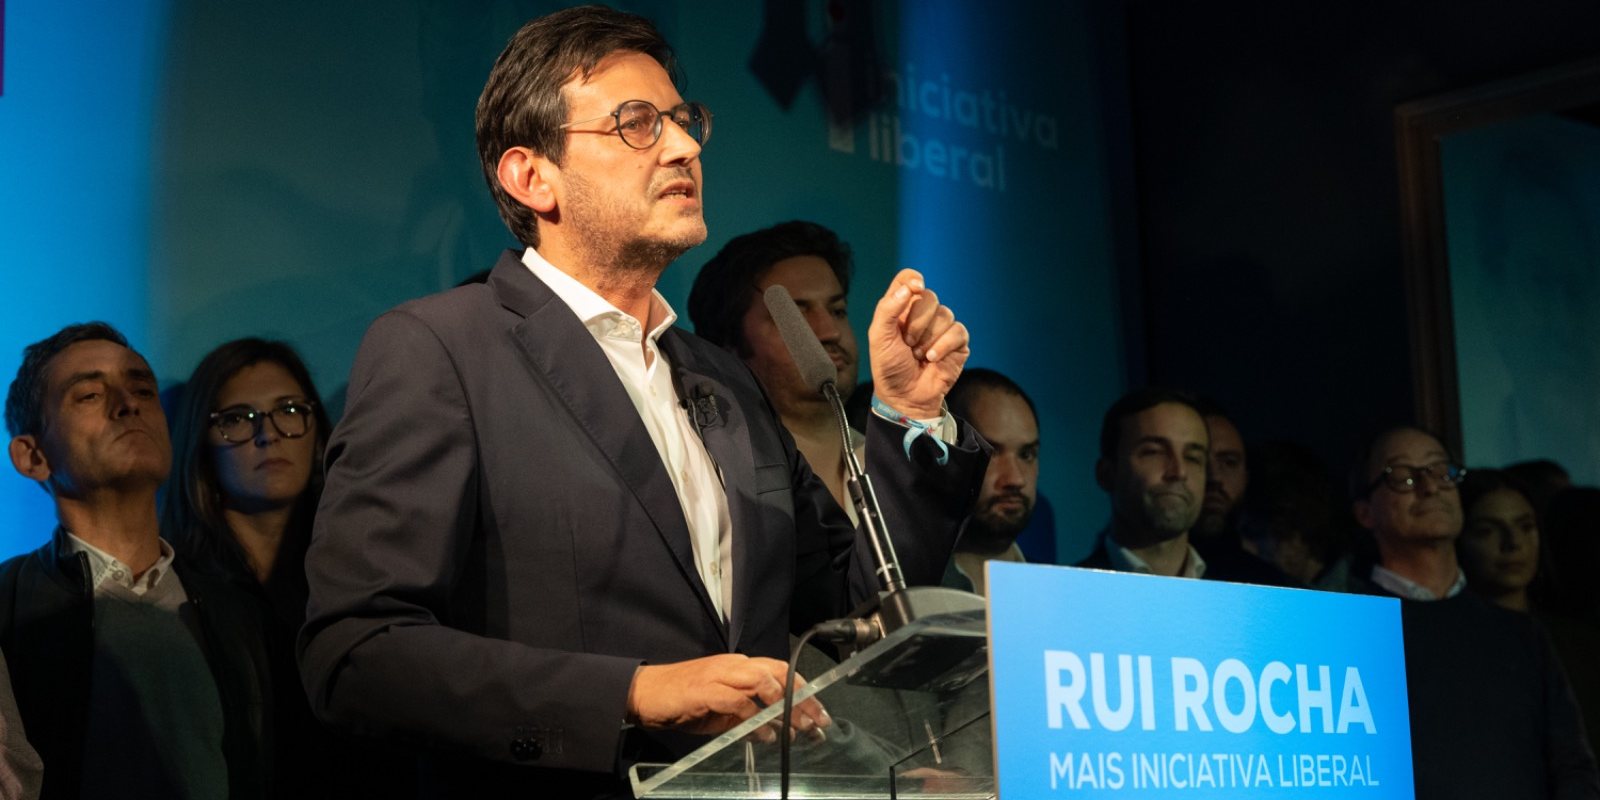 Rui Rocha é o candidato à liderança da IL apoiado por João Cotrim Figueiredo